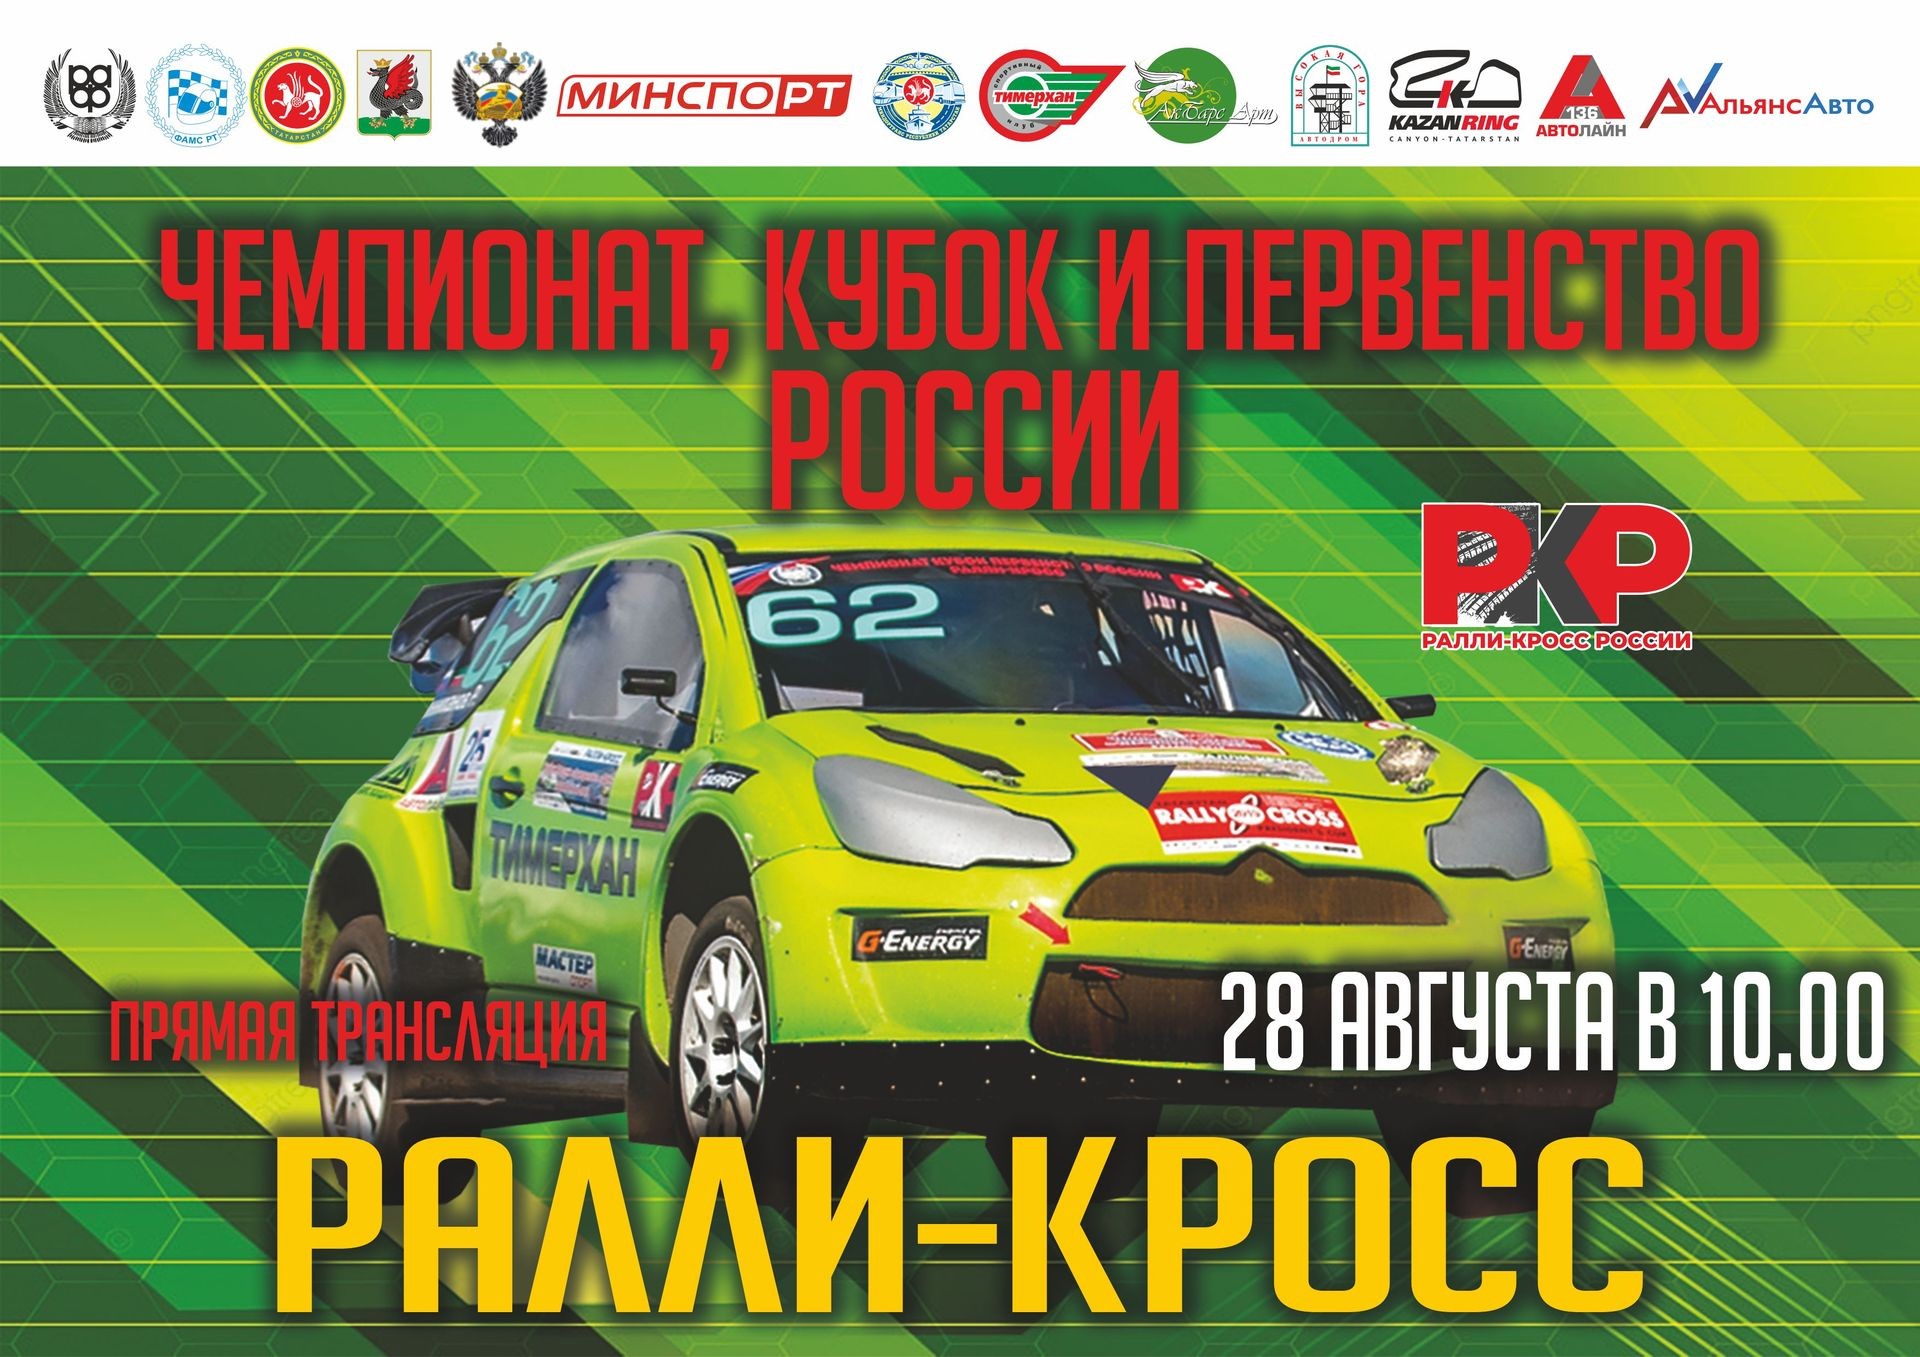 С 27 по 28 августа в Казани на автодроме Высокая Гора пройдет финал Чемпионата, Кубка и Первенства России по ралли-кроссу